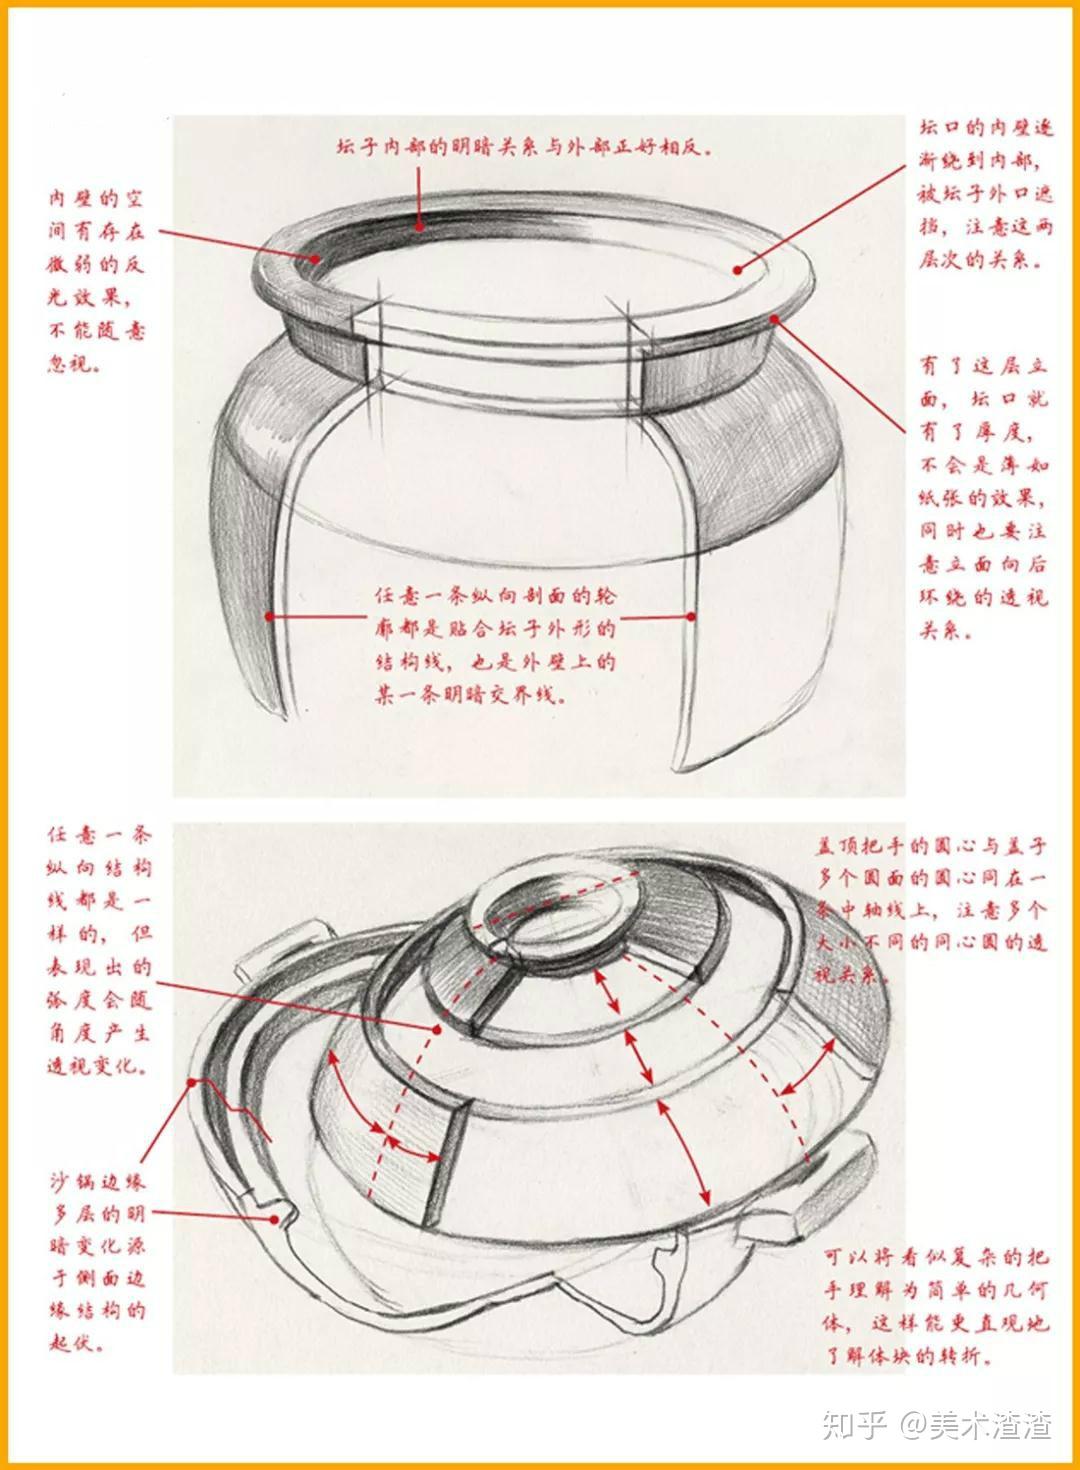 吃透素描静物中罐子的结构特征及表现手法！-搜狐大视野-搜狐新闻